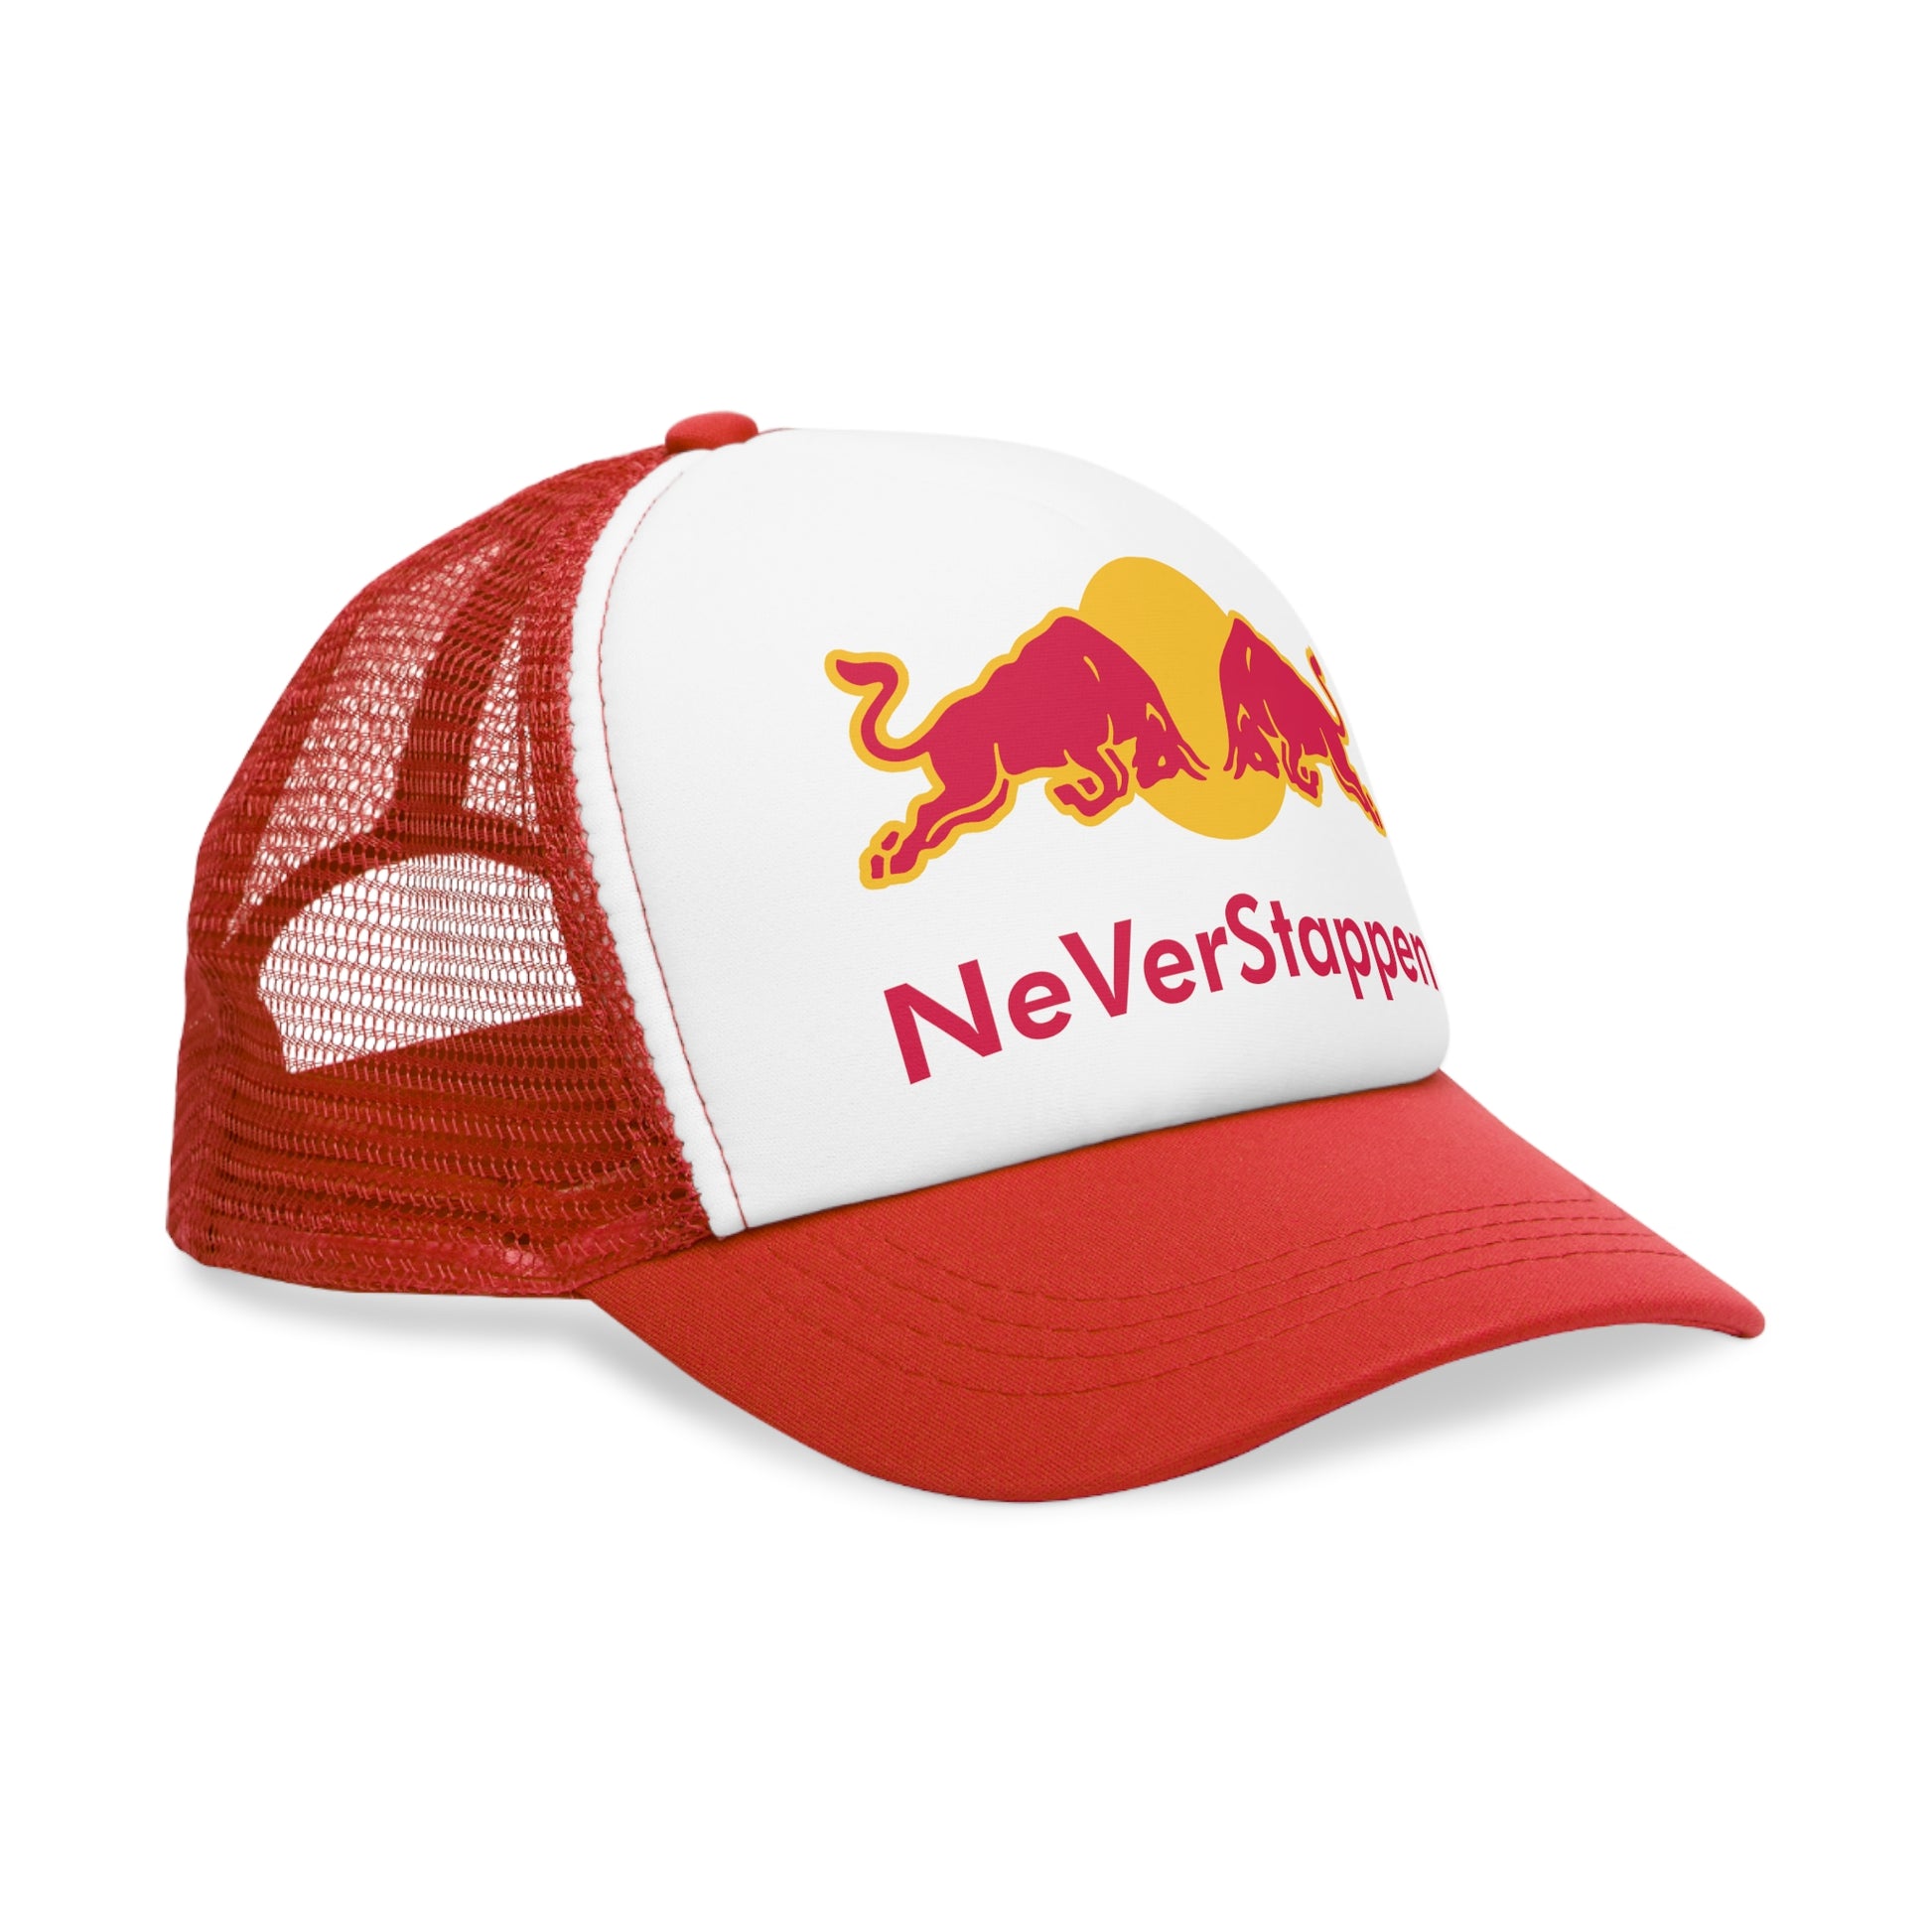 NeVerStappen Red Bull Formula 1 F1 Max Verstappen Mesh Cap Next Cult Brand F1, Max Verstappen, Red Bull